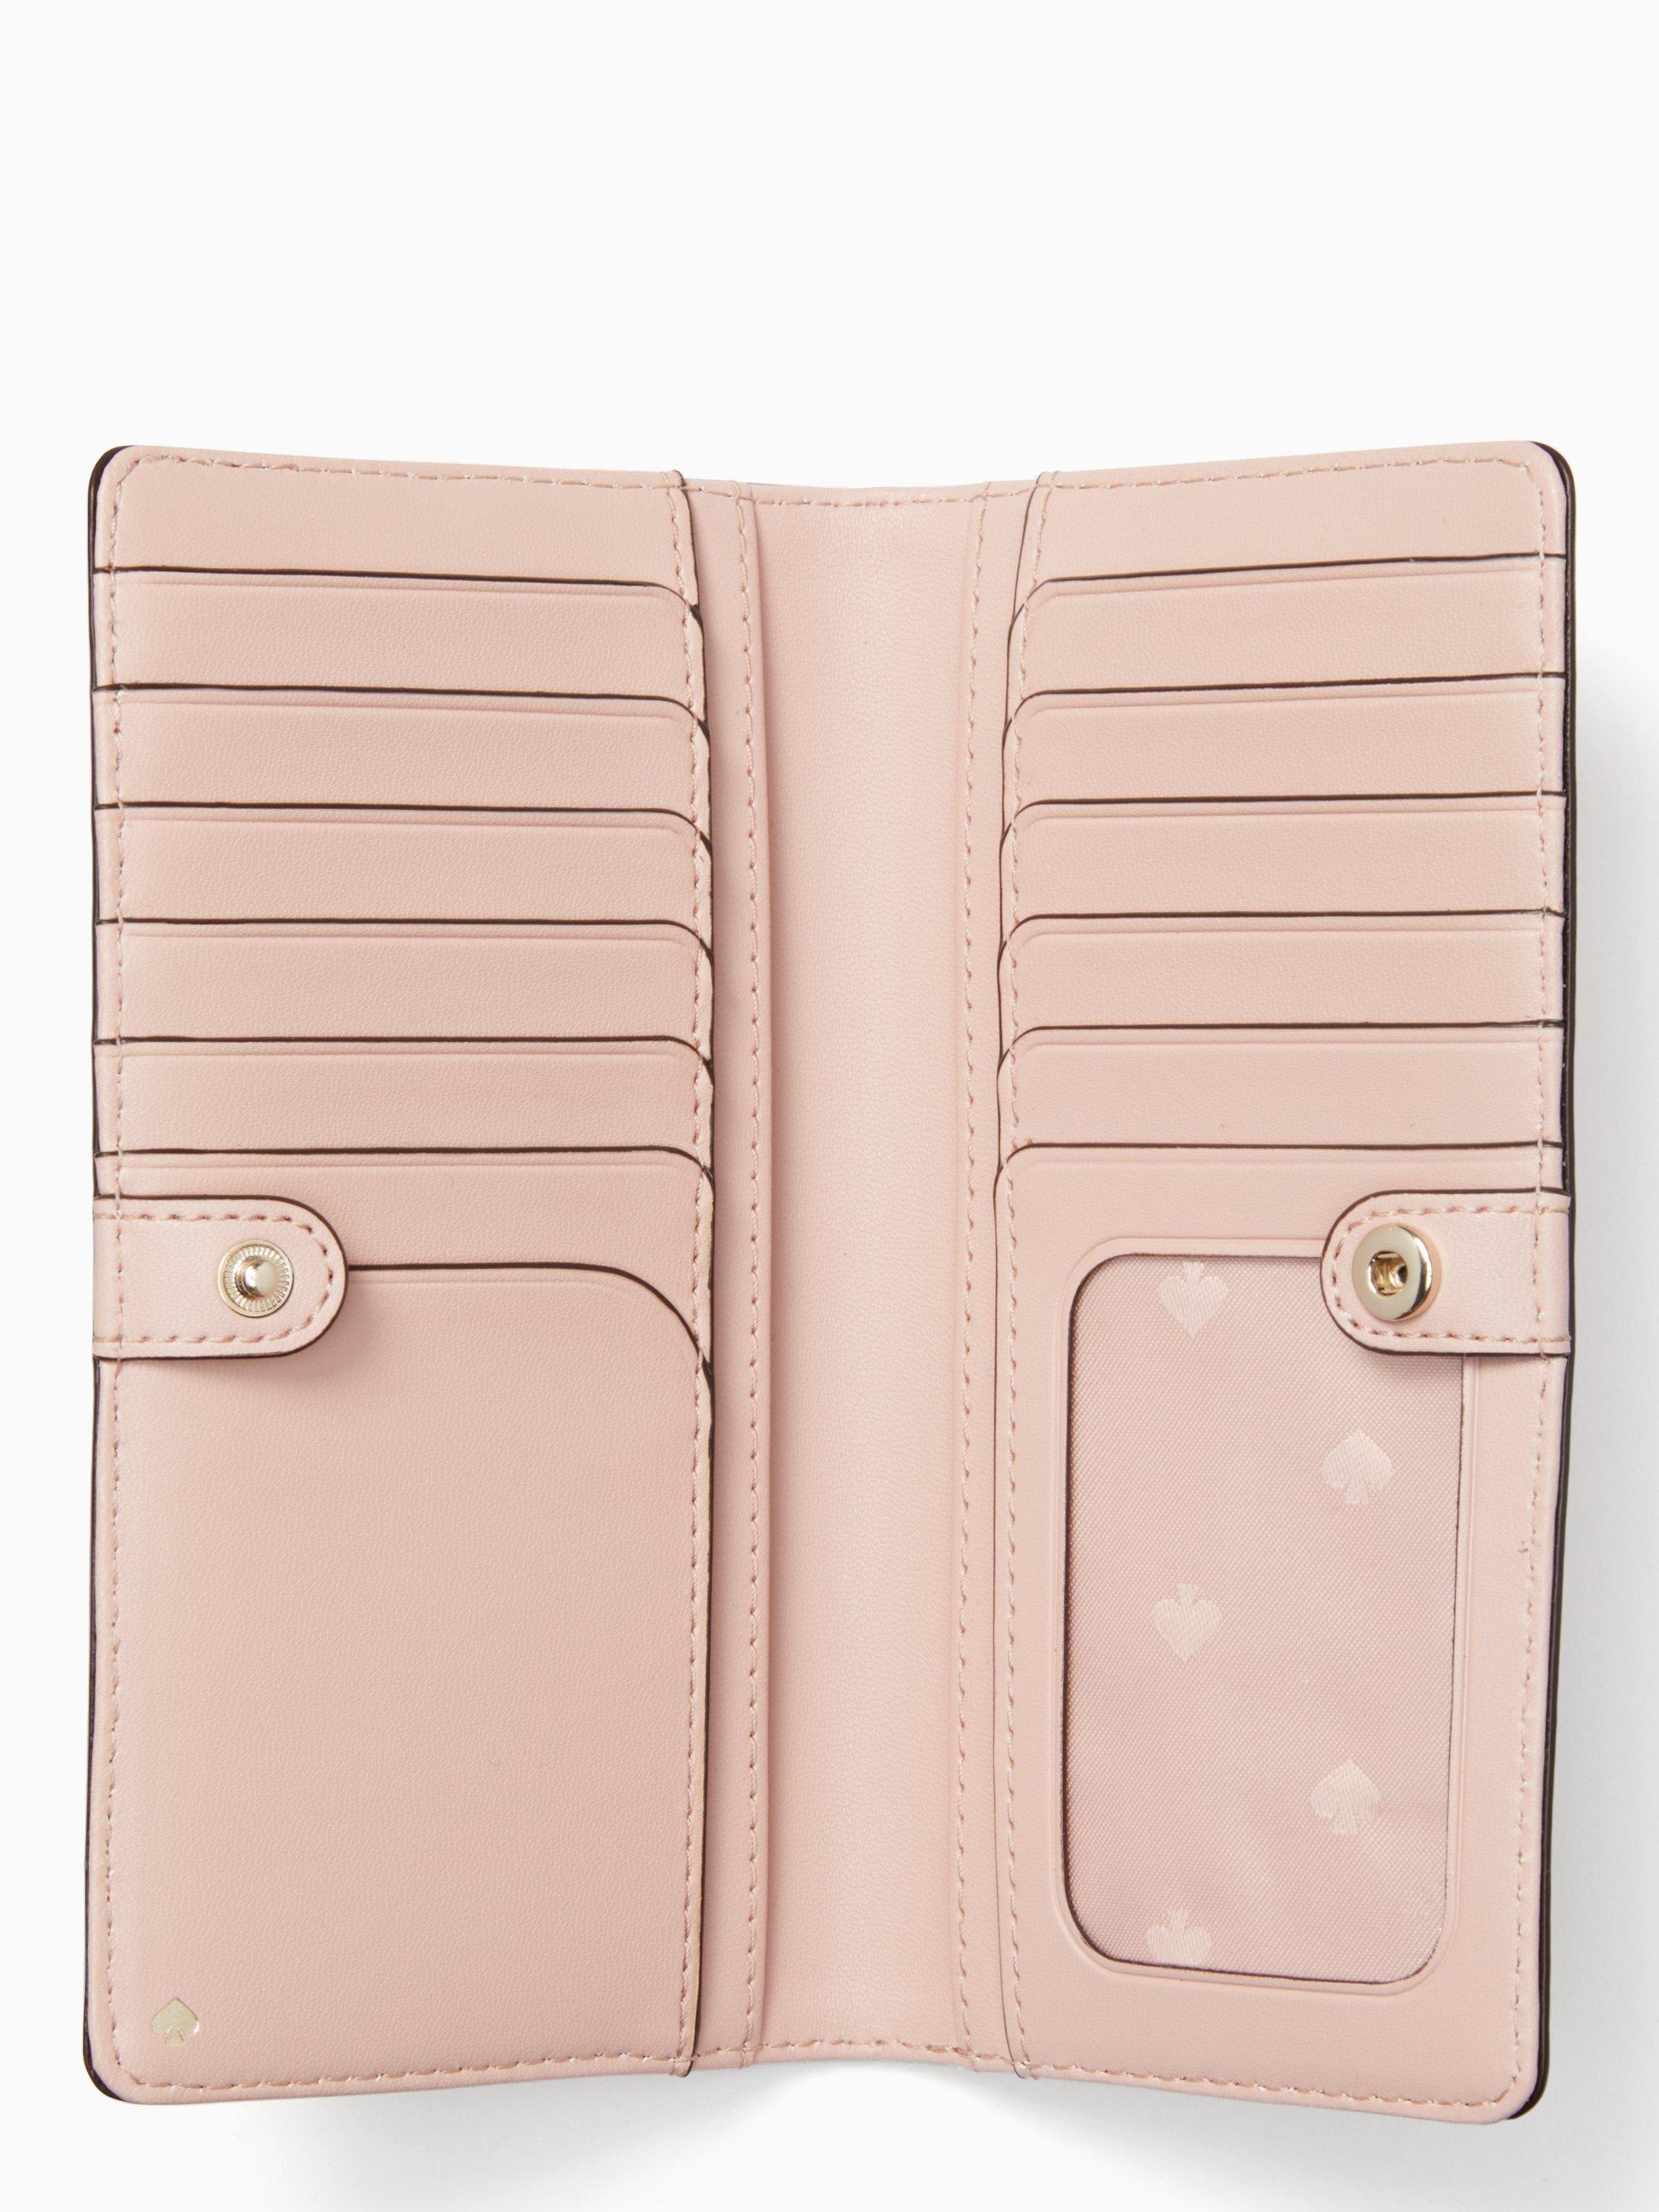 VELIHOME Women's Minimalist Elegant Short Wallet